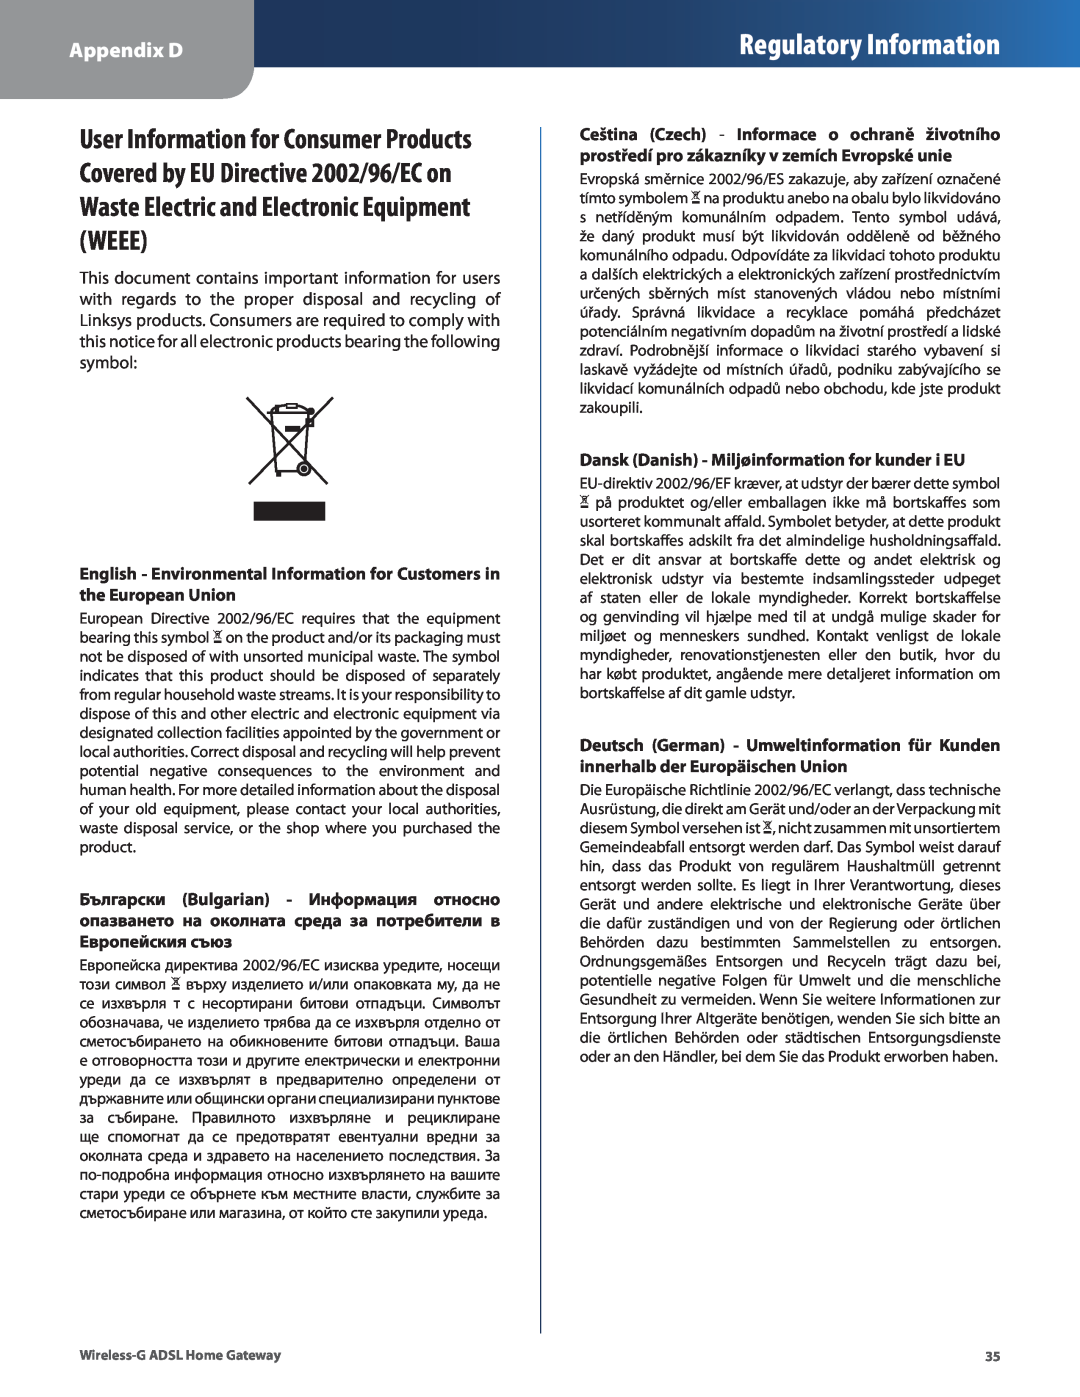 Linksys WAG200G manual Regulatory Information, Appendix D, Dansk Danish - Miljøinformation for kunder i EU 